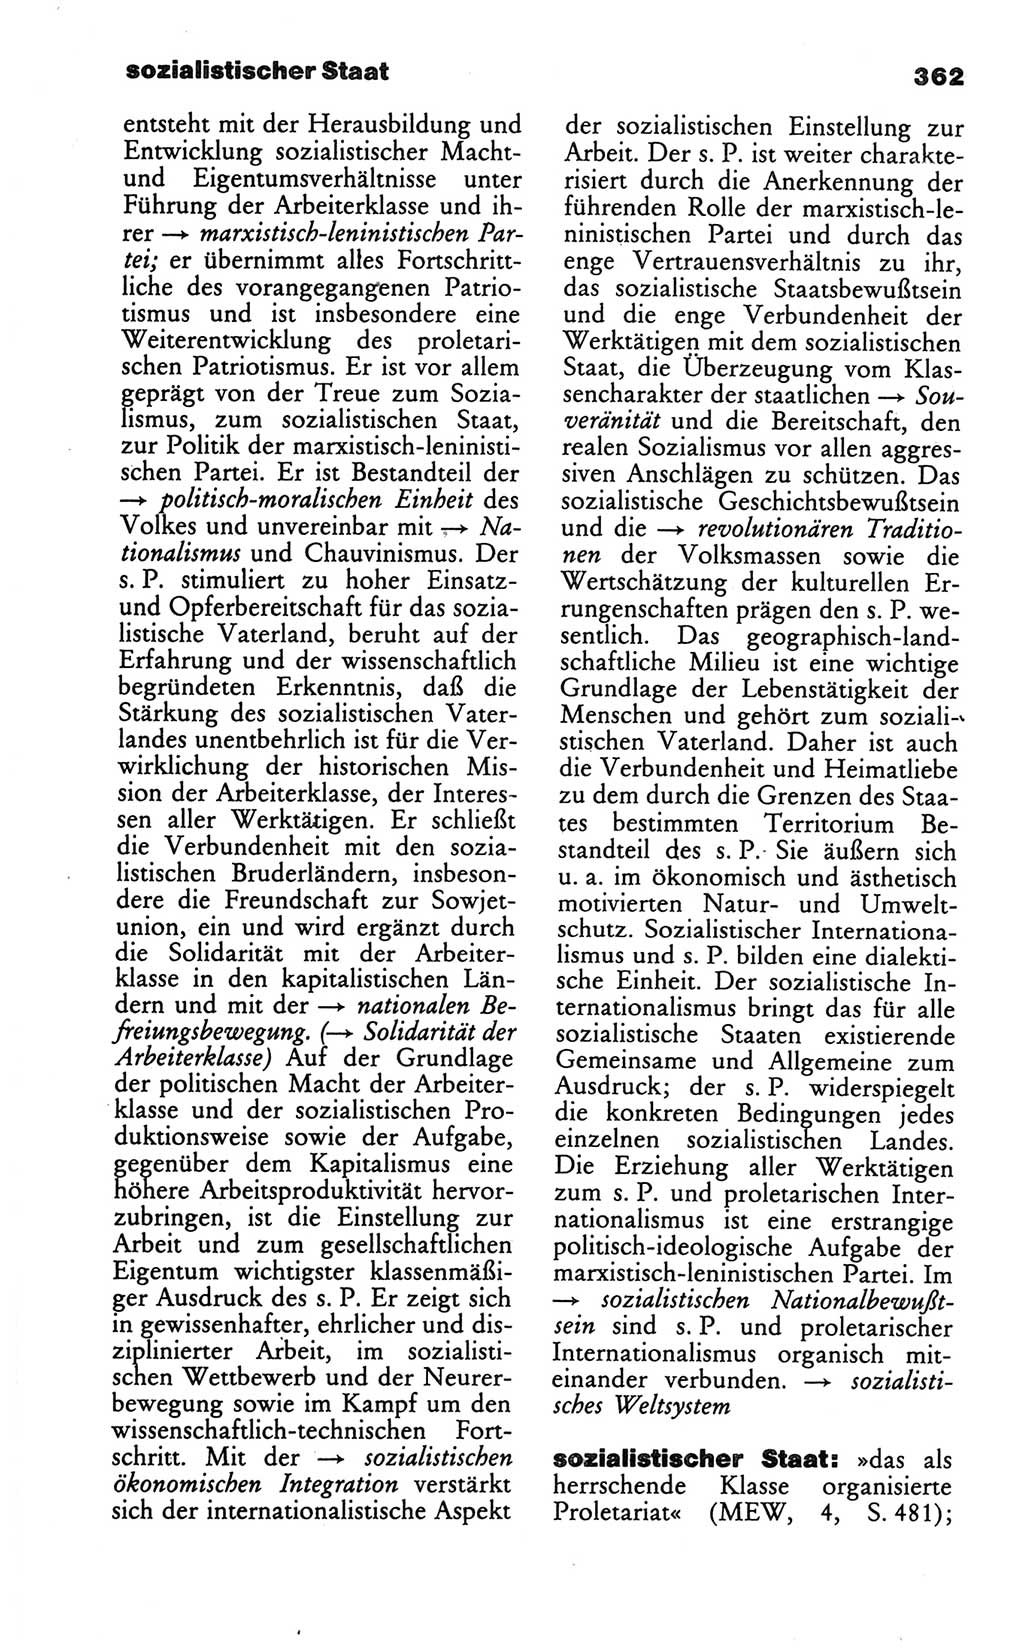 Wörterbuch des wissenschaftlichen Kommunismus [Deutsche Demokratische Republik (DDR)] 1986, Seite 362 (Wb. wiss. Komm. DDR 1986, S. 362)